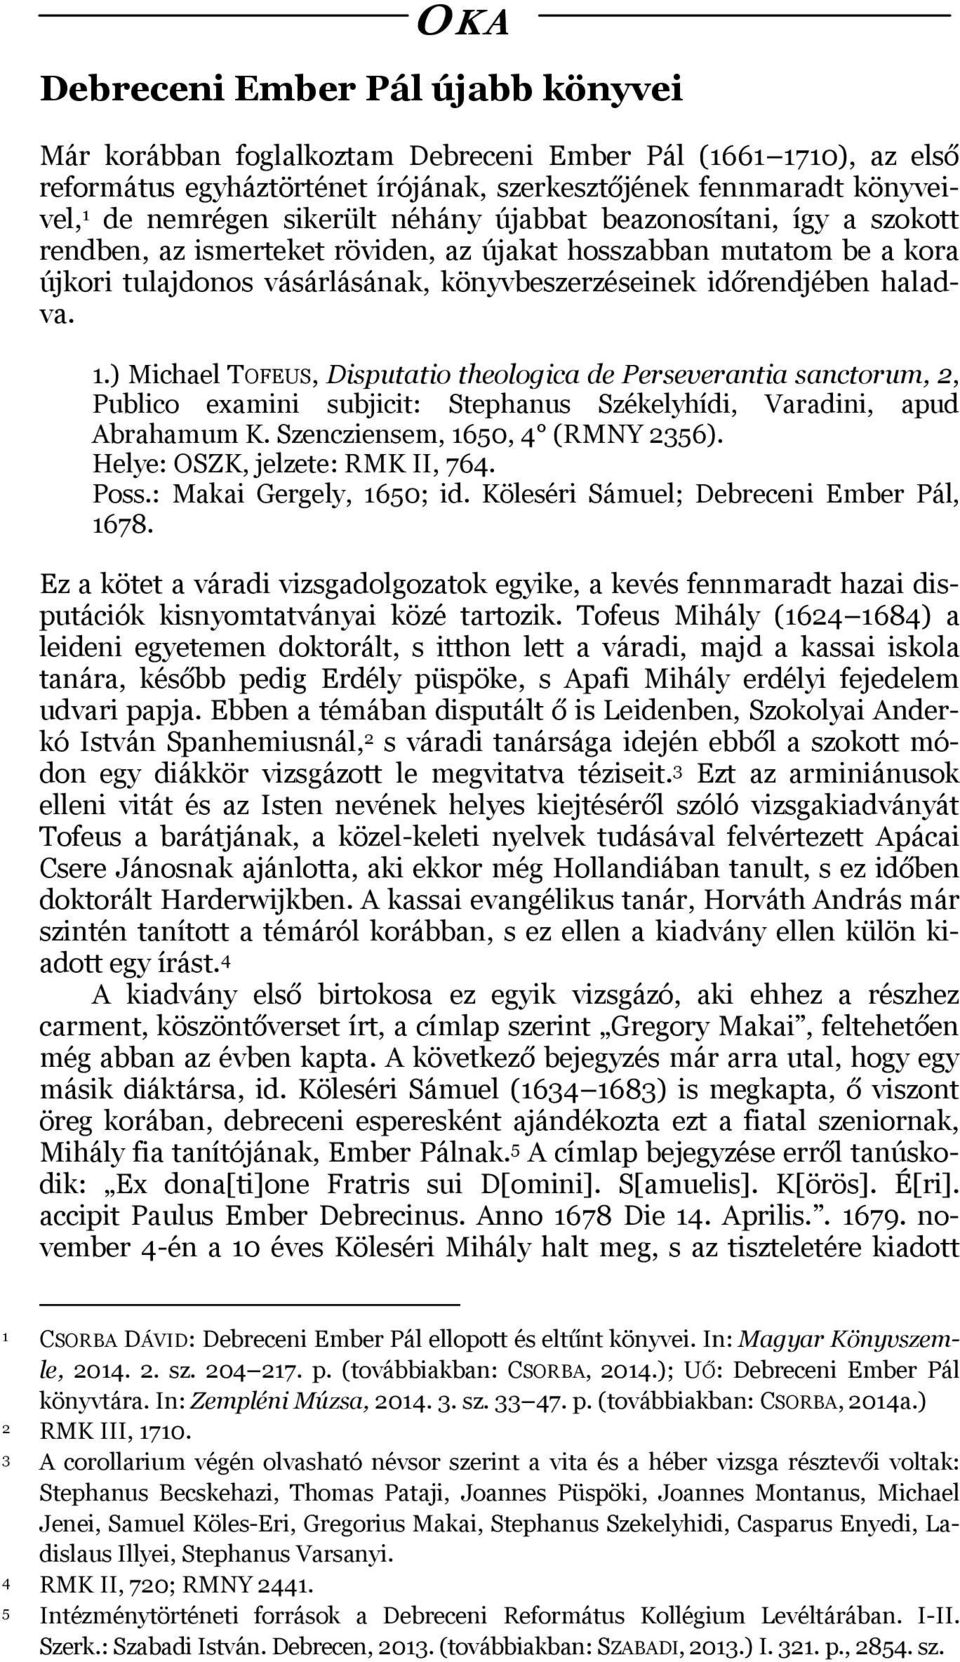 ) Michael TOFEUS, Disputatio theologica de Perseverantia sanctorum, 2, Publico examini subjicit: Stephanus Székelyhídi, Varadini, apud Abrahamum K. Szencziensem, 1650, 4 (RMNY 2356).